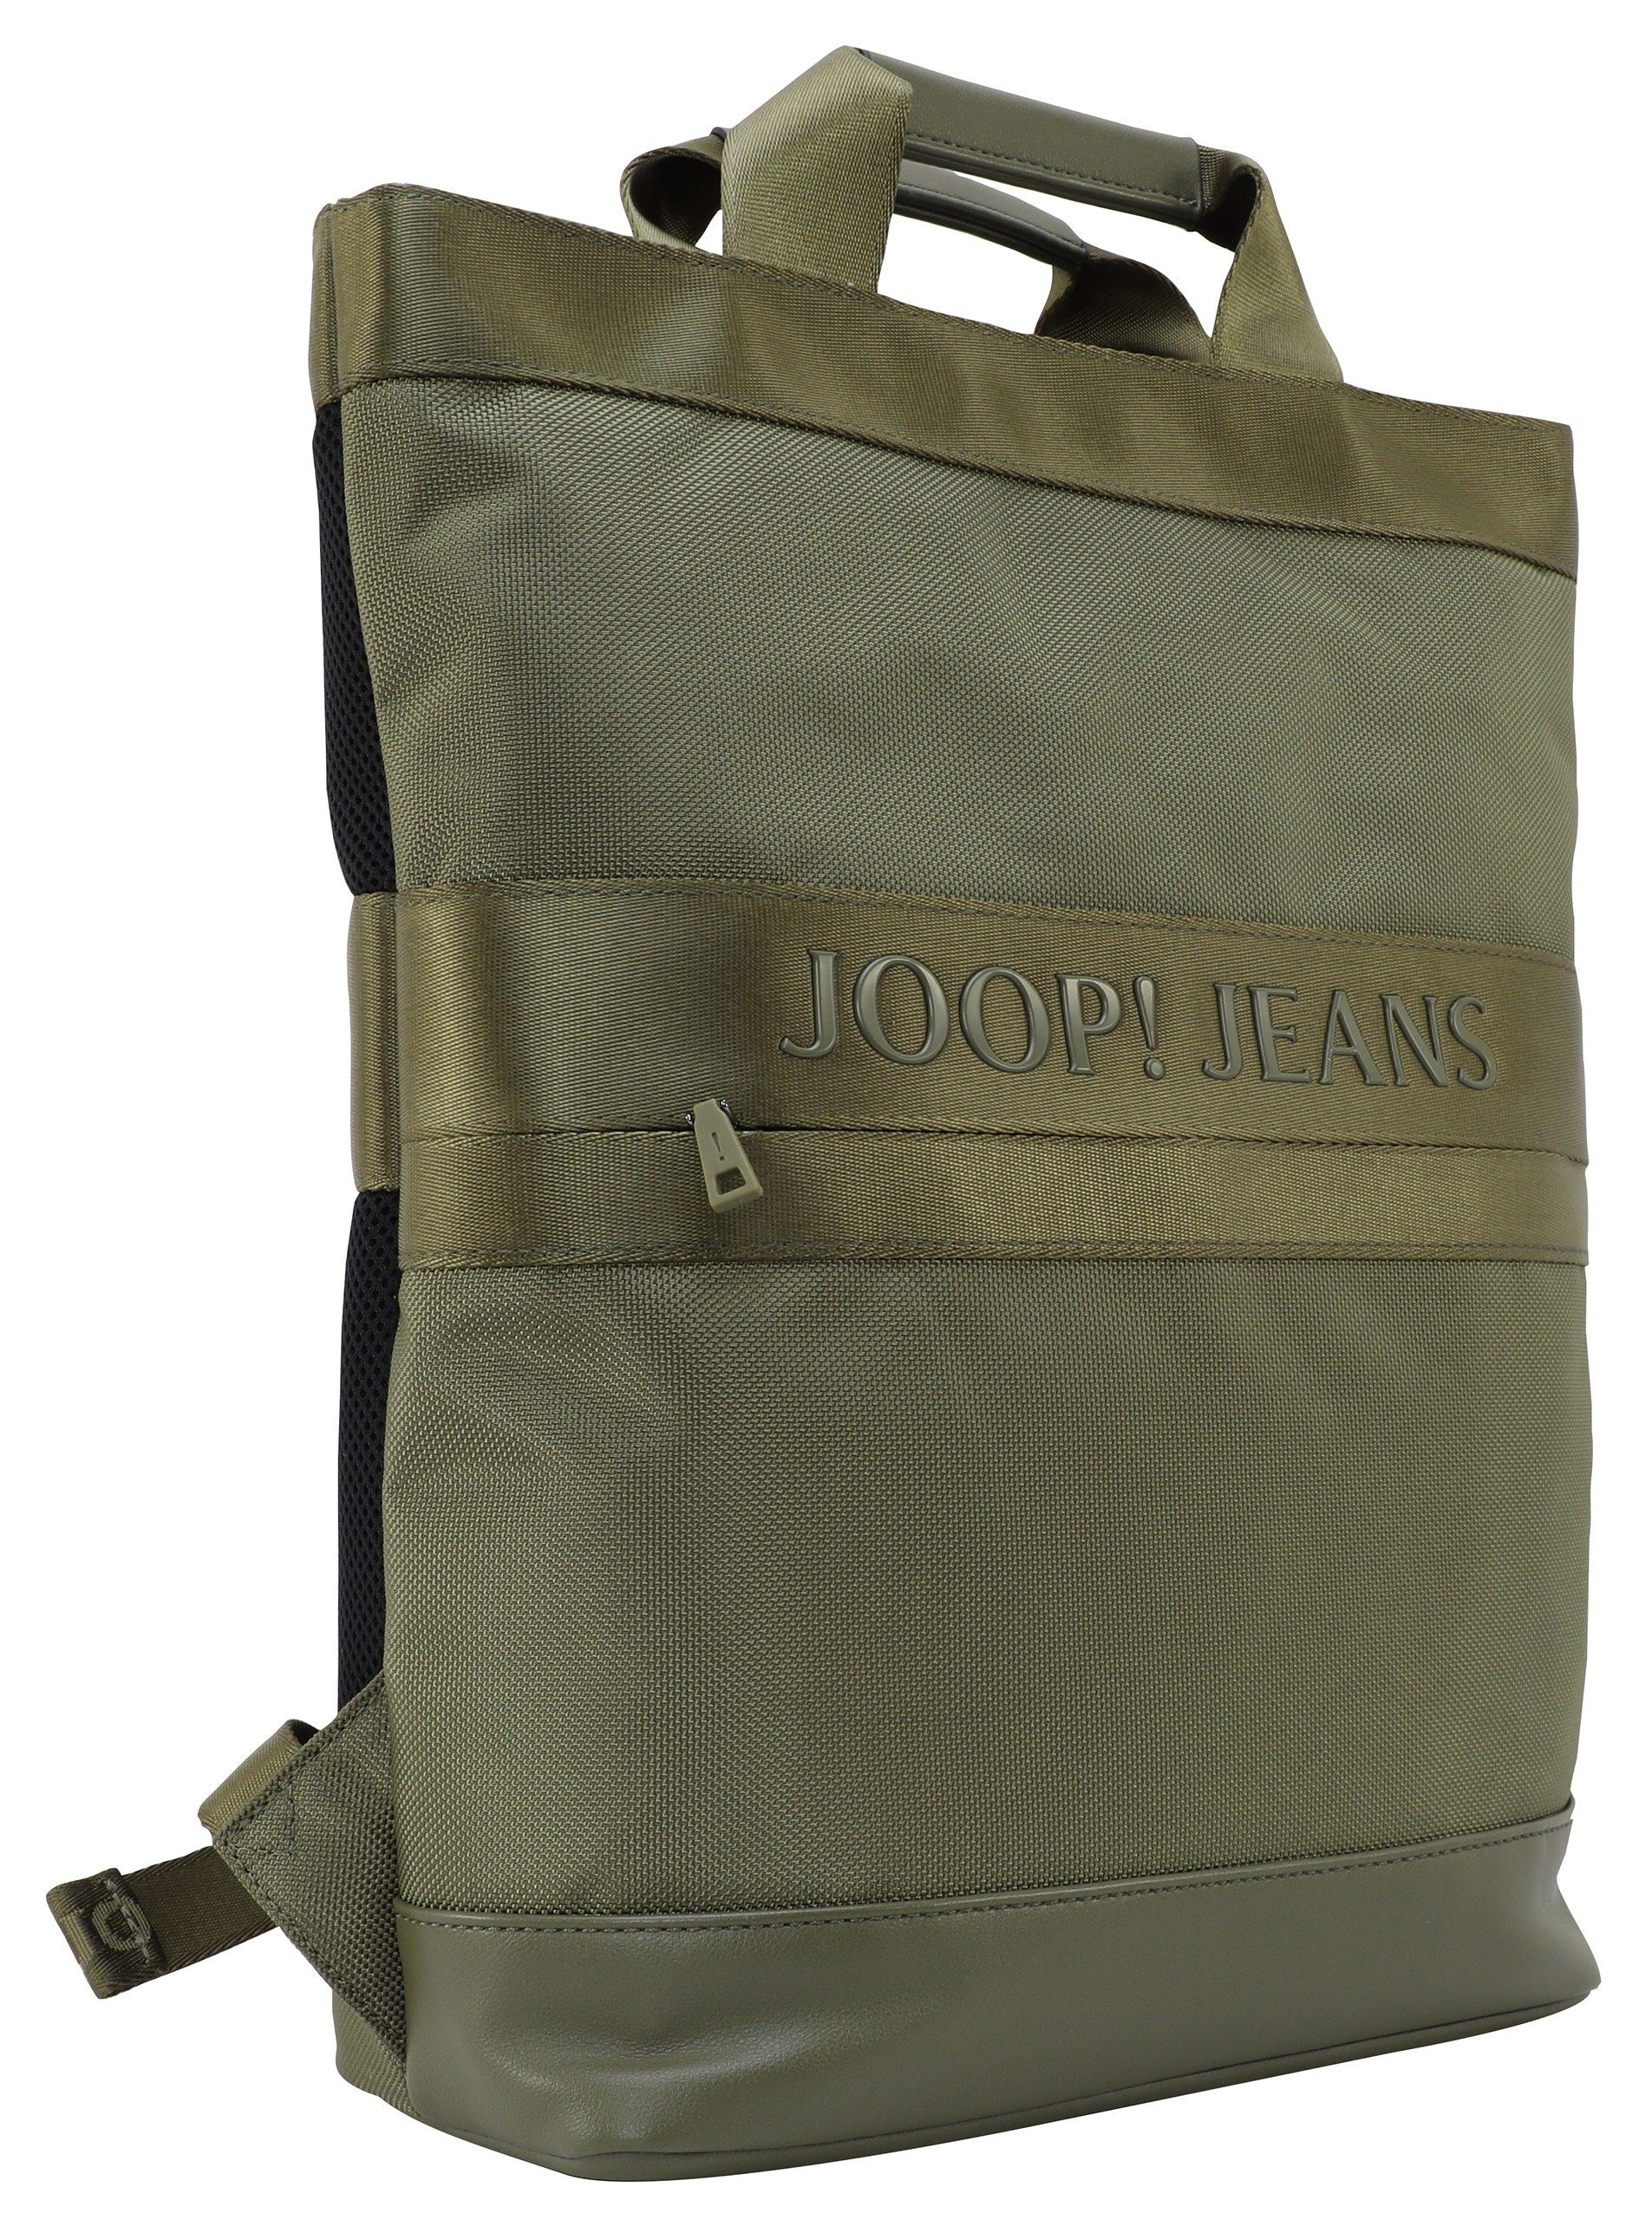 Joop Jeans Cityrucksack mit night svz, forest Reißverschluss-Vortasche backpack falk modica